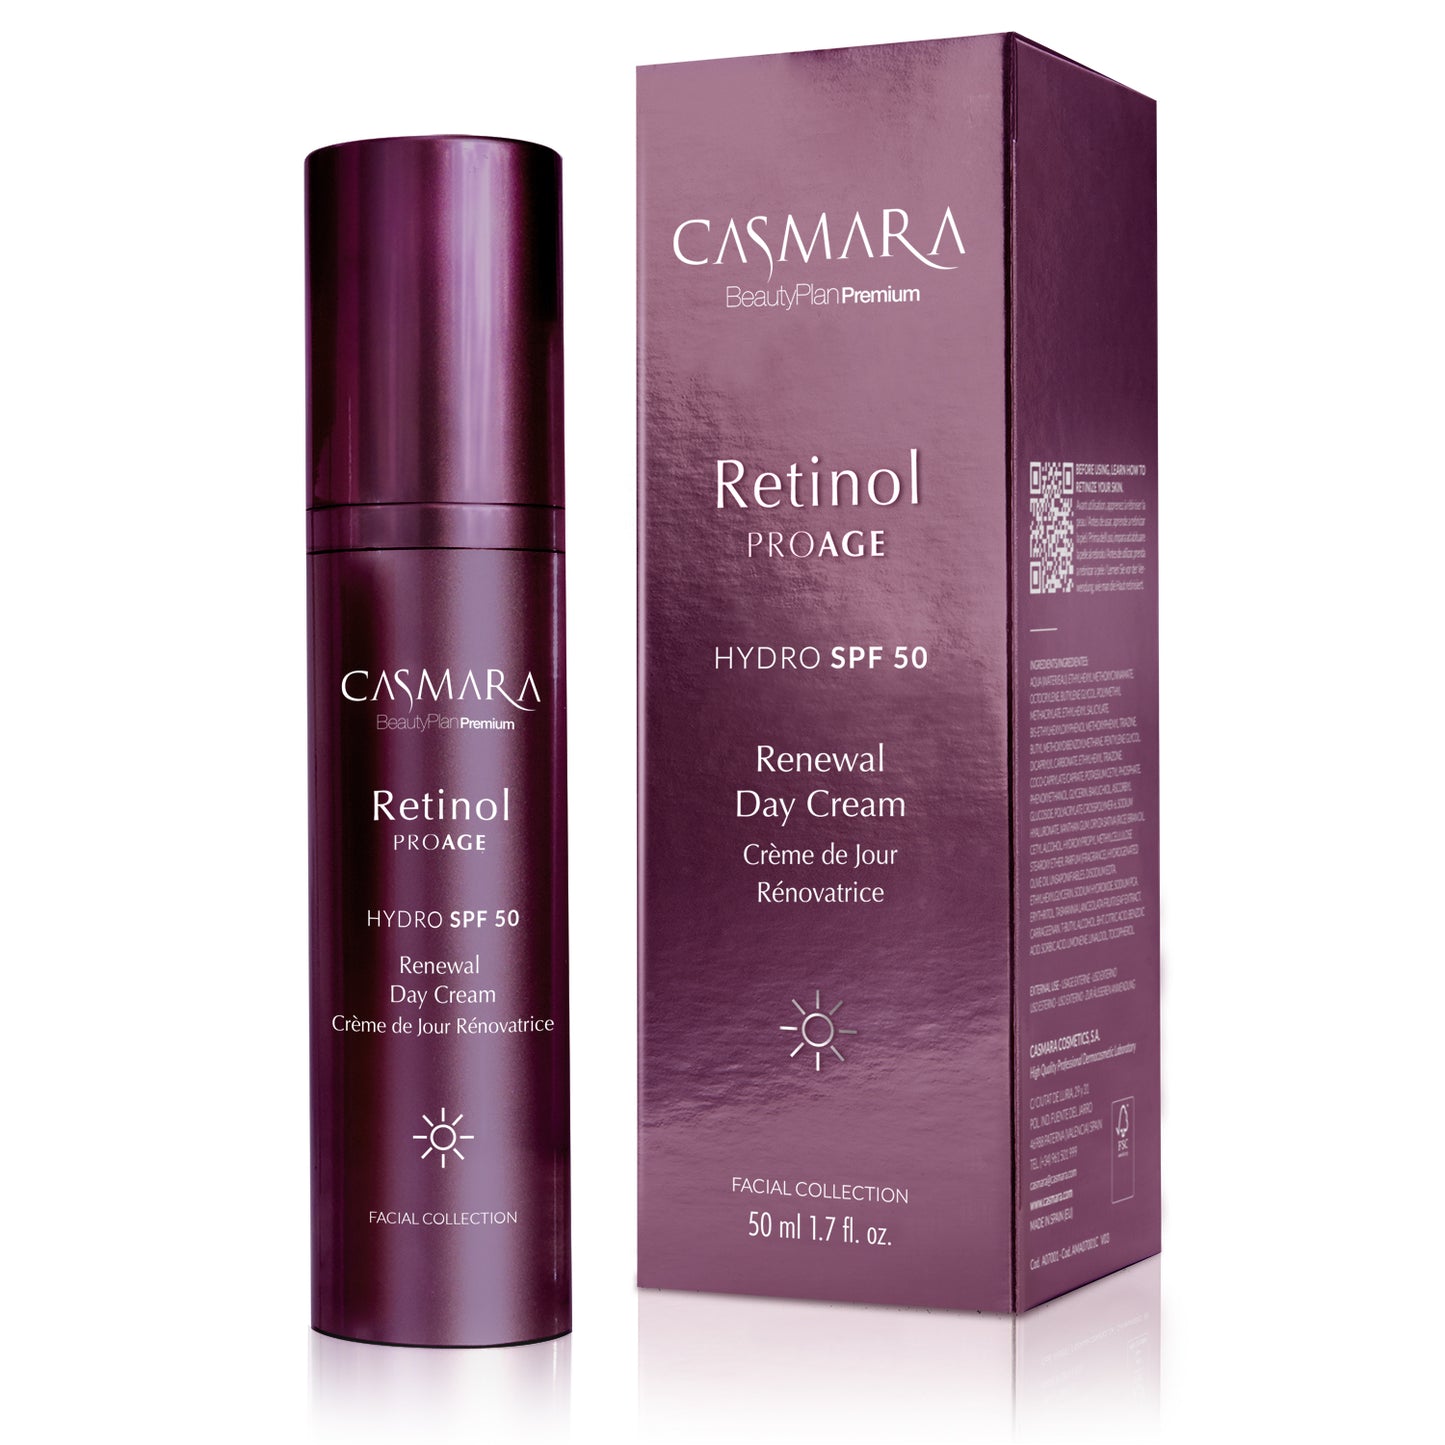 Retinol PROAGE Renewal con FP 50 (Crema de dia) - CASMARA